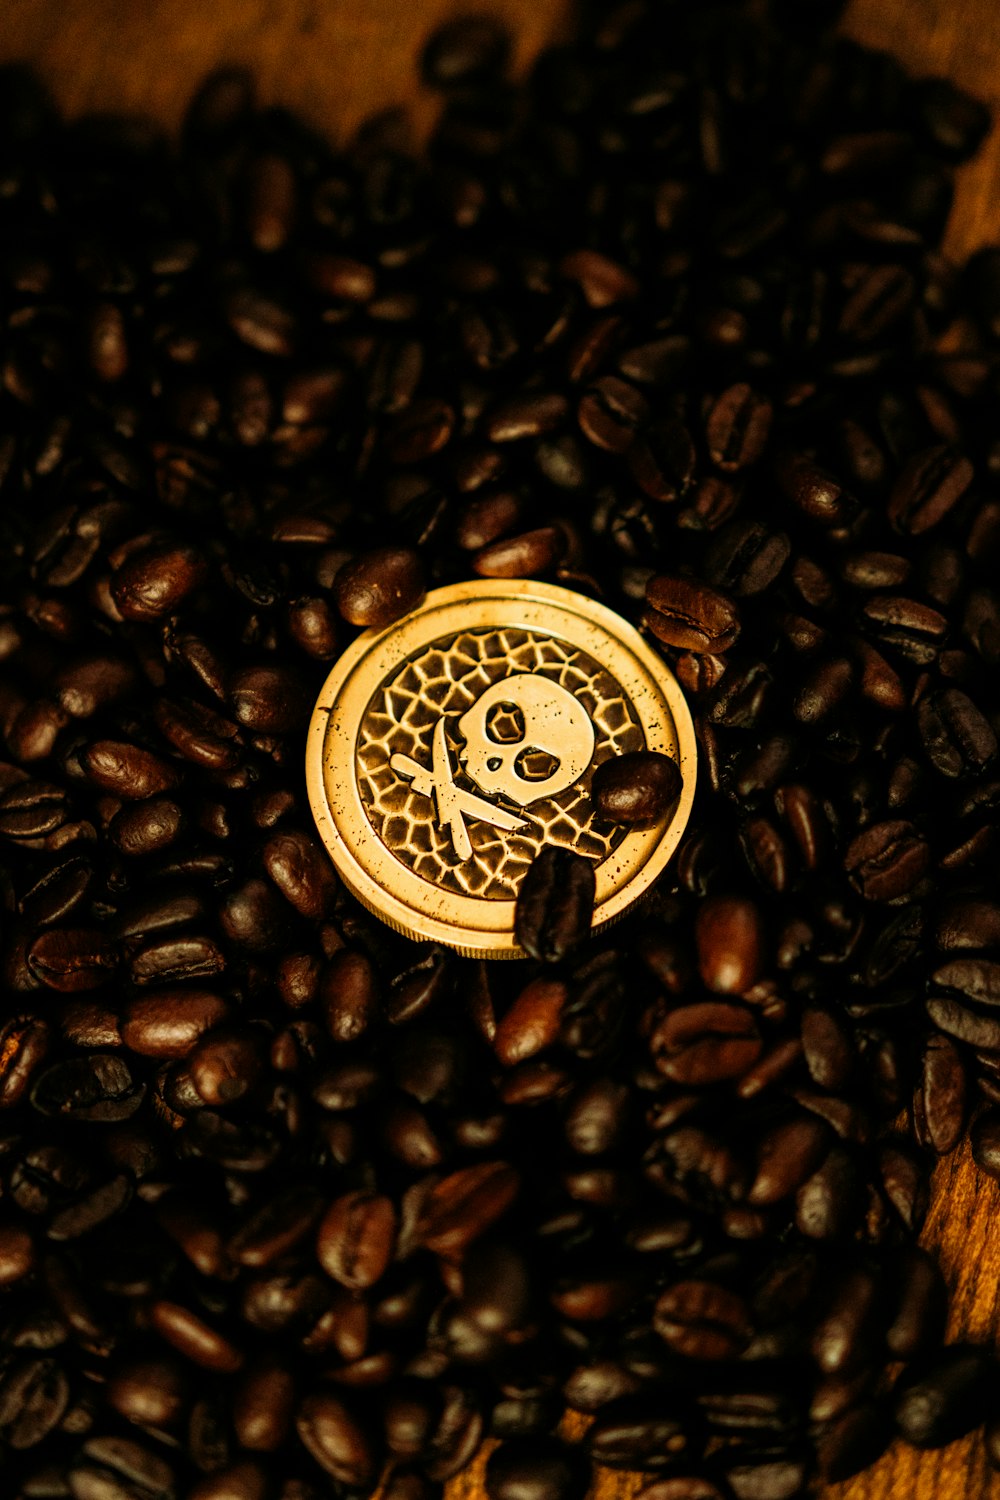 chicchi di caffè marroni su superficie nera